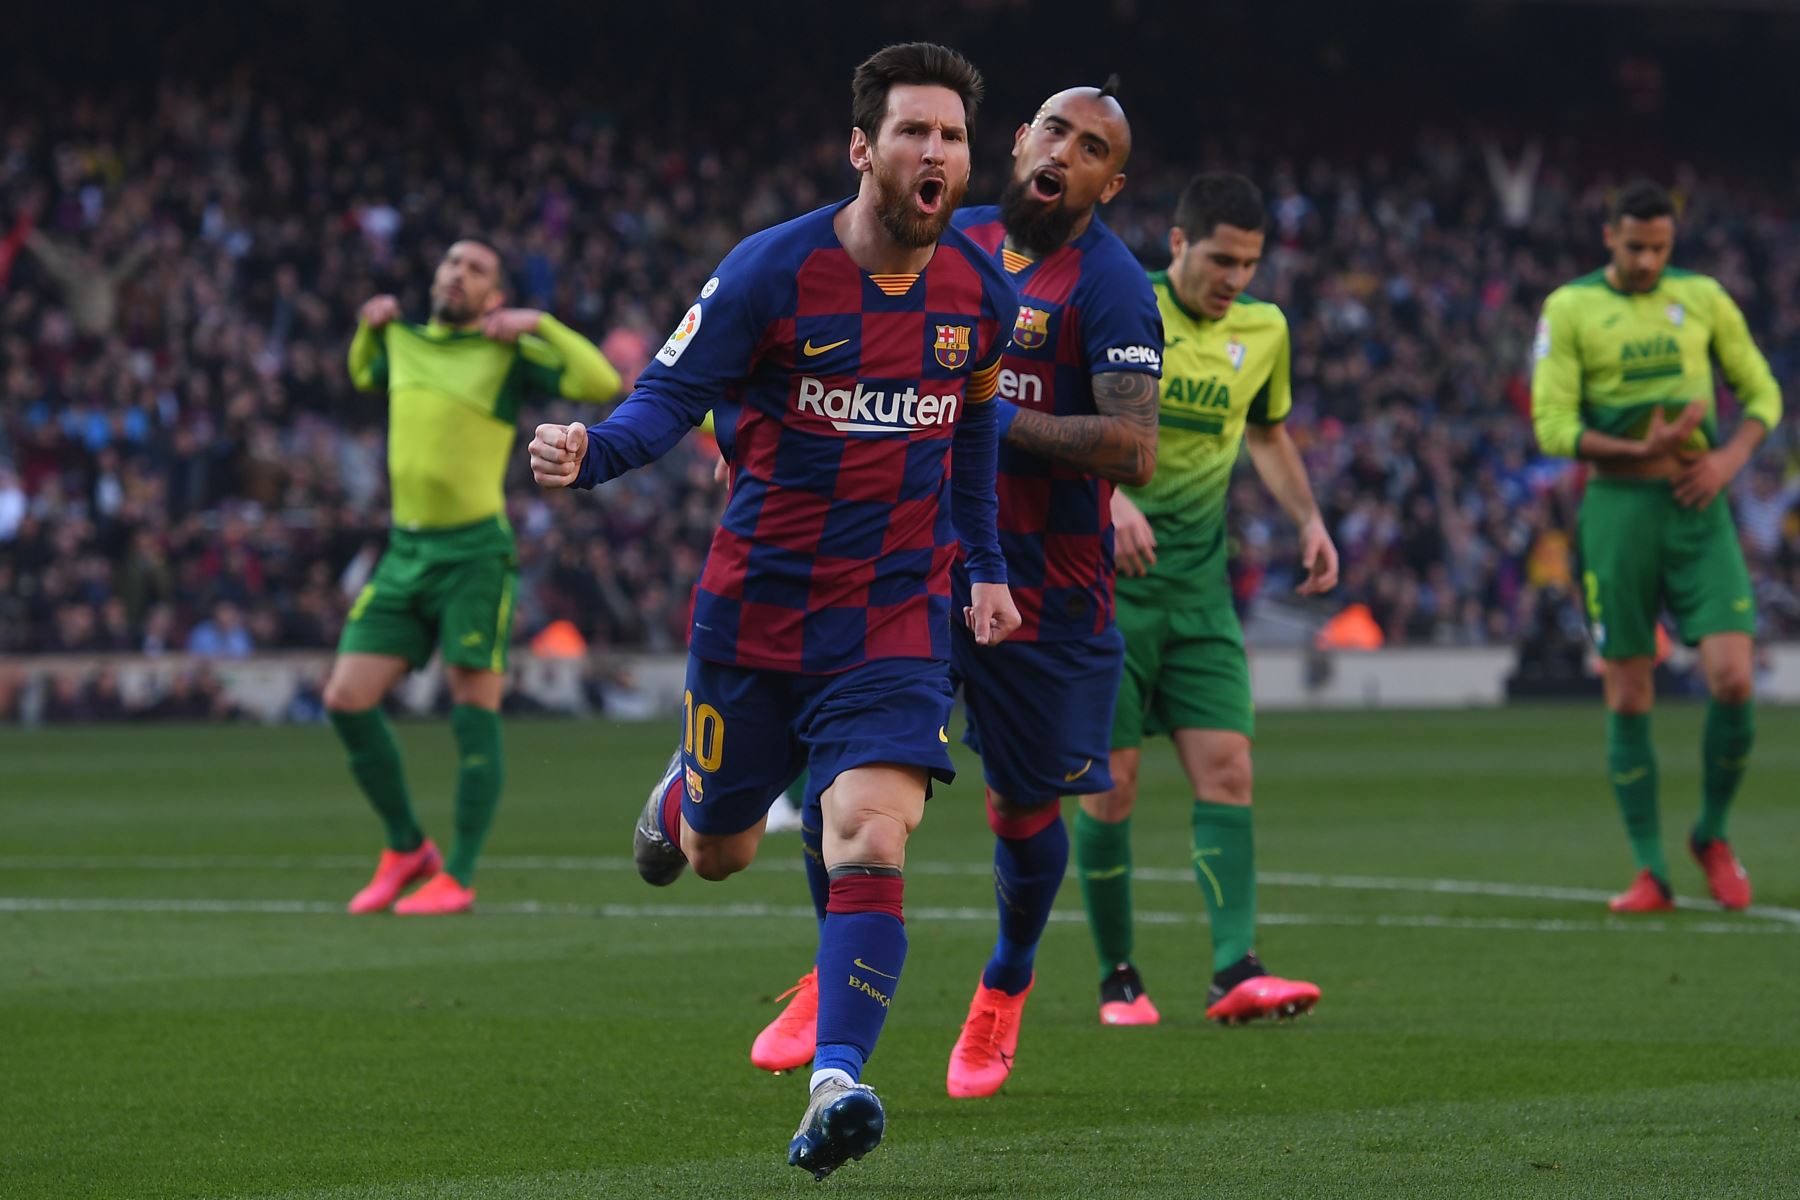 El delantero argentino de Barcelona, ​​Lionel Messi, celebra tras anotar durante el partido de fútbol de la liga española FC Barcelona contra el SD Eibar.
Foto: AFP